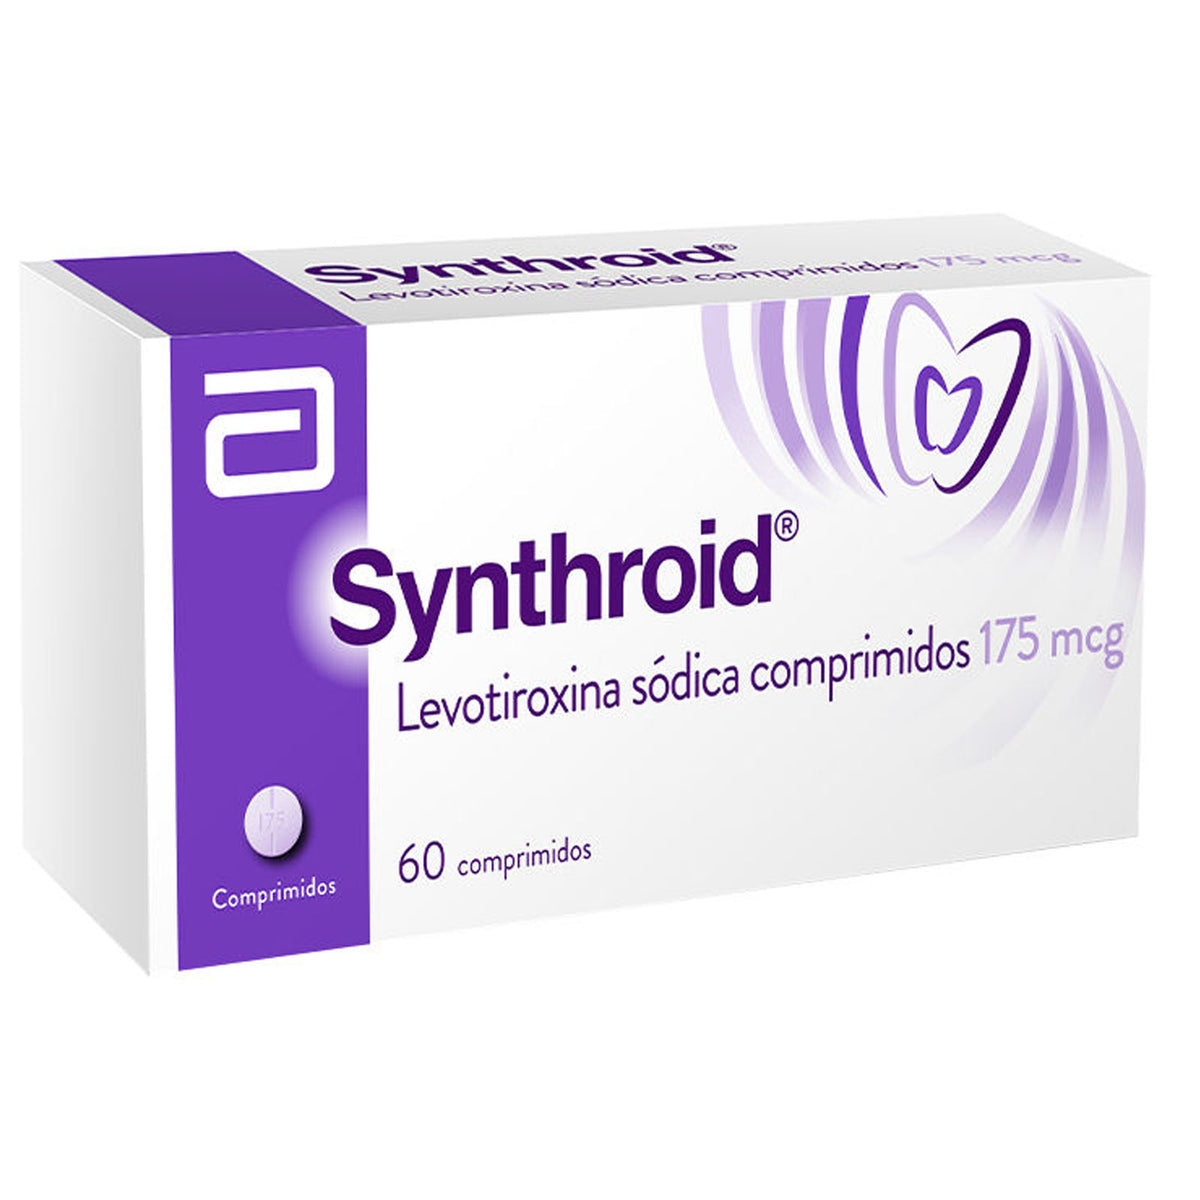 Synthroid Comprimidos 175mcg